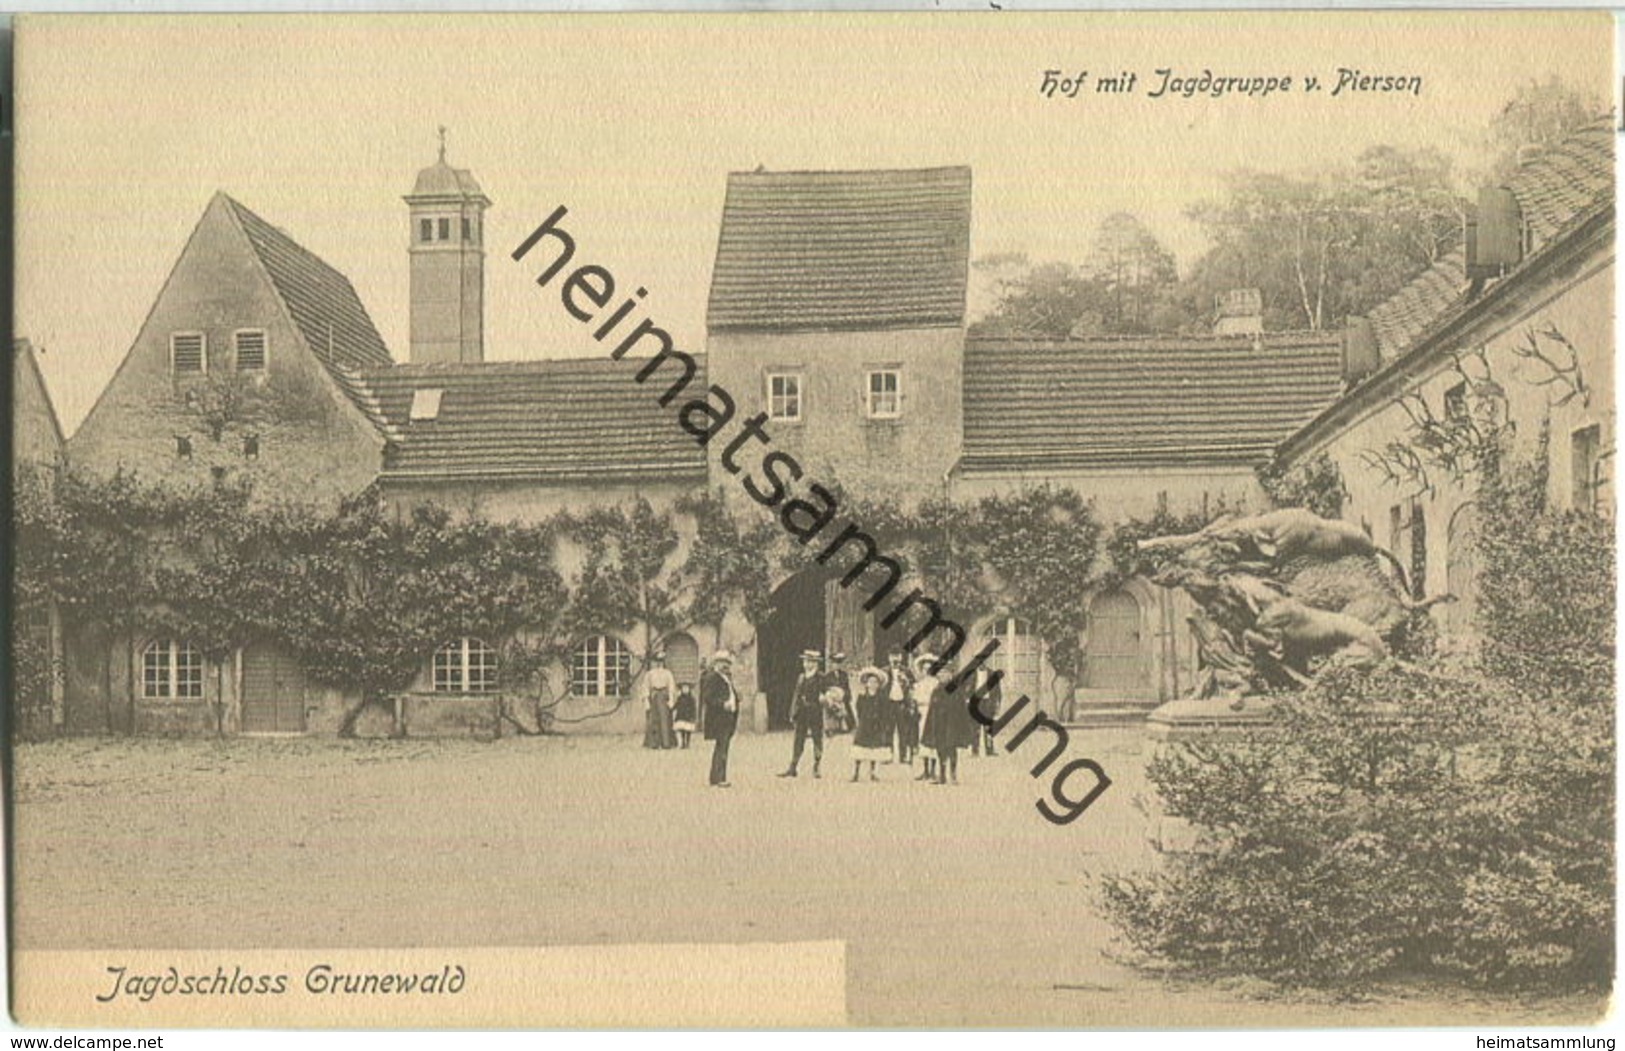 Jagdschloss Grunewald - Hof Mit Jagdgruppe Von Pierson - Verlag J. Goldiner Berlin Ca. 1910 - Grunewald